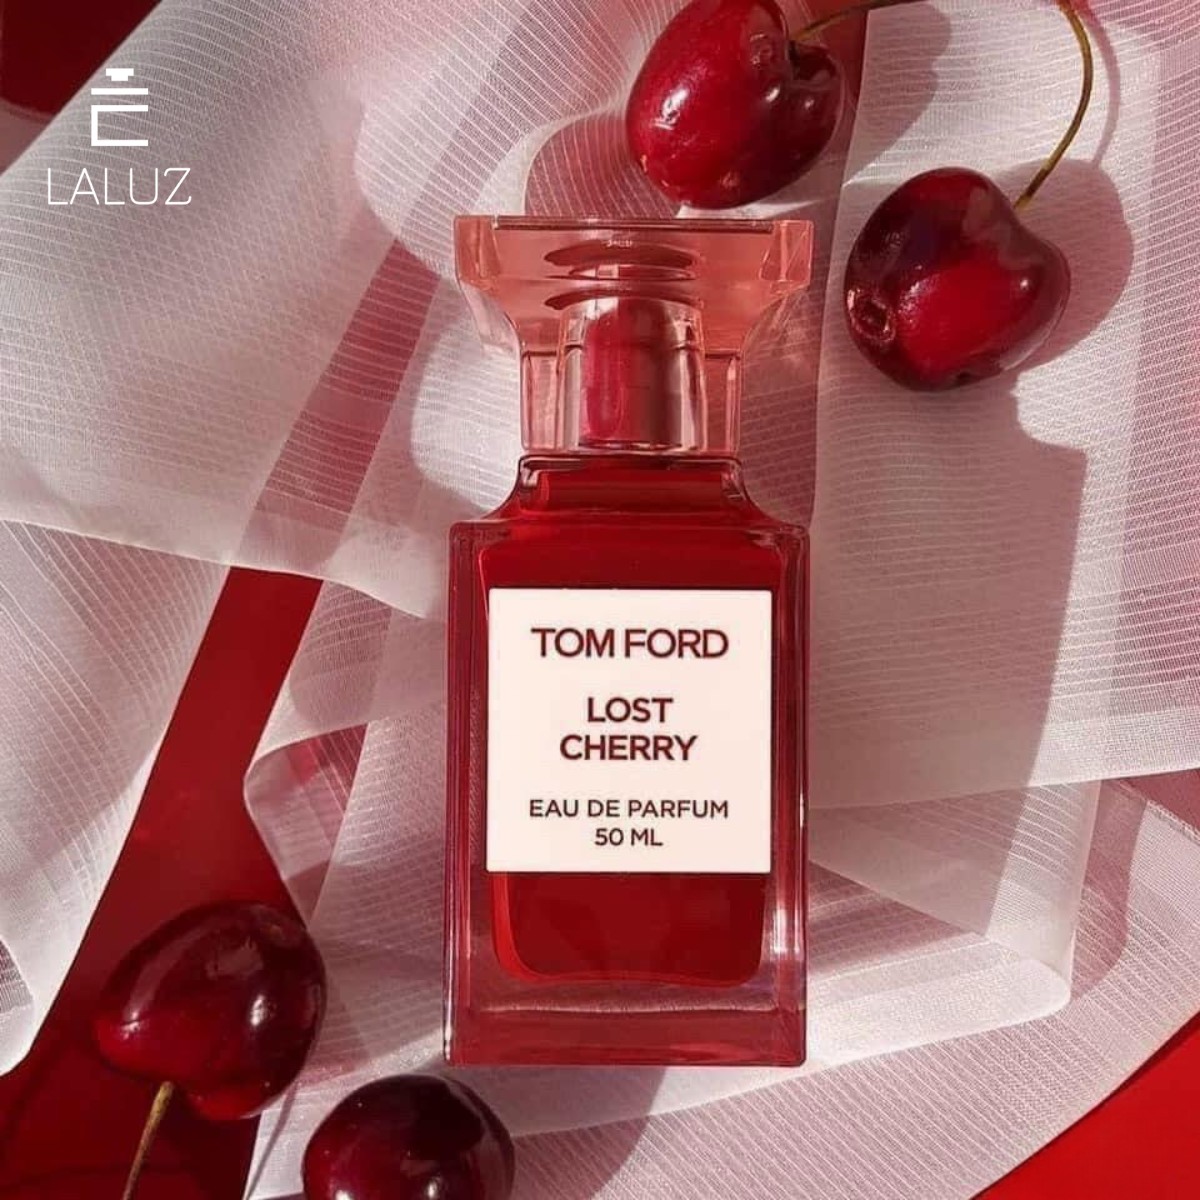 Perfume Tom Ford Lost Cherry là dòng nước hoa unisex thích hợp cho cả nam và nữ